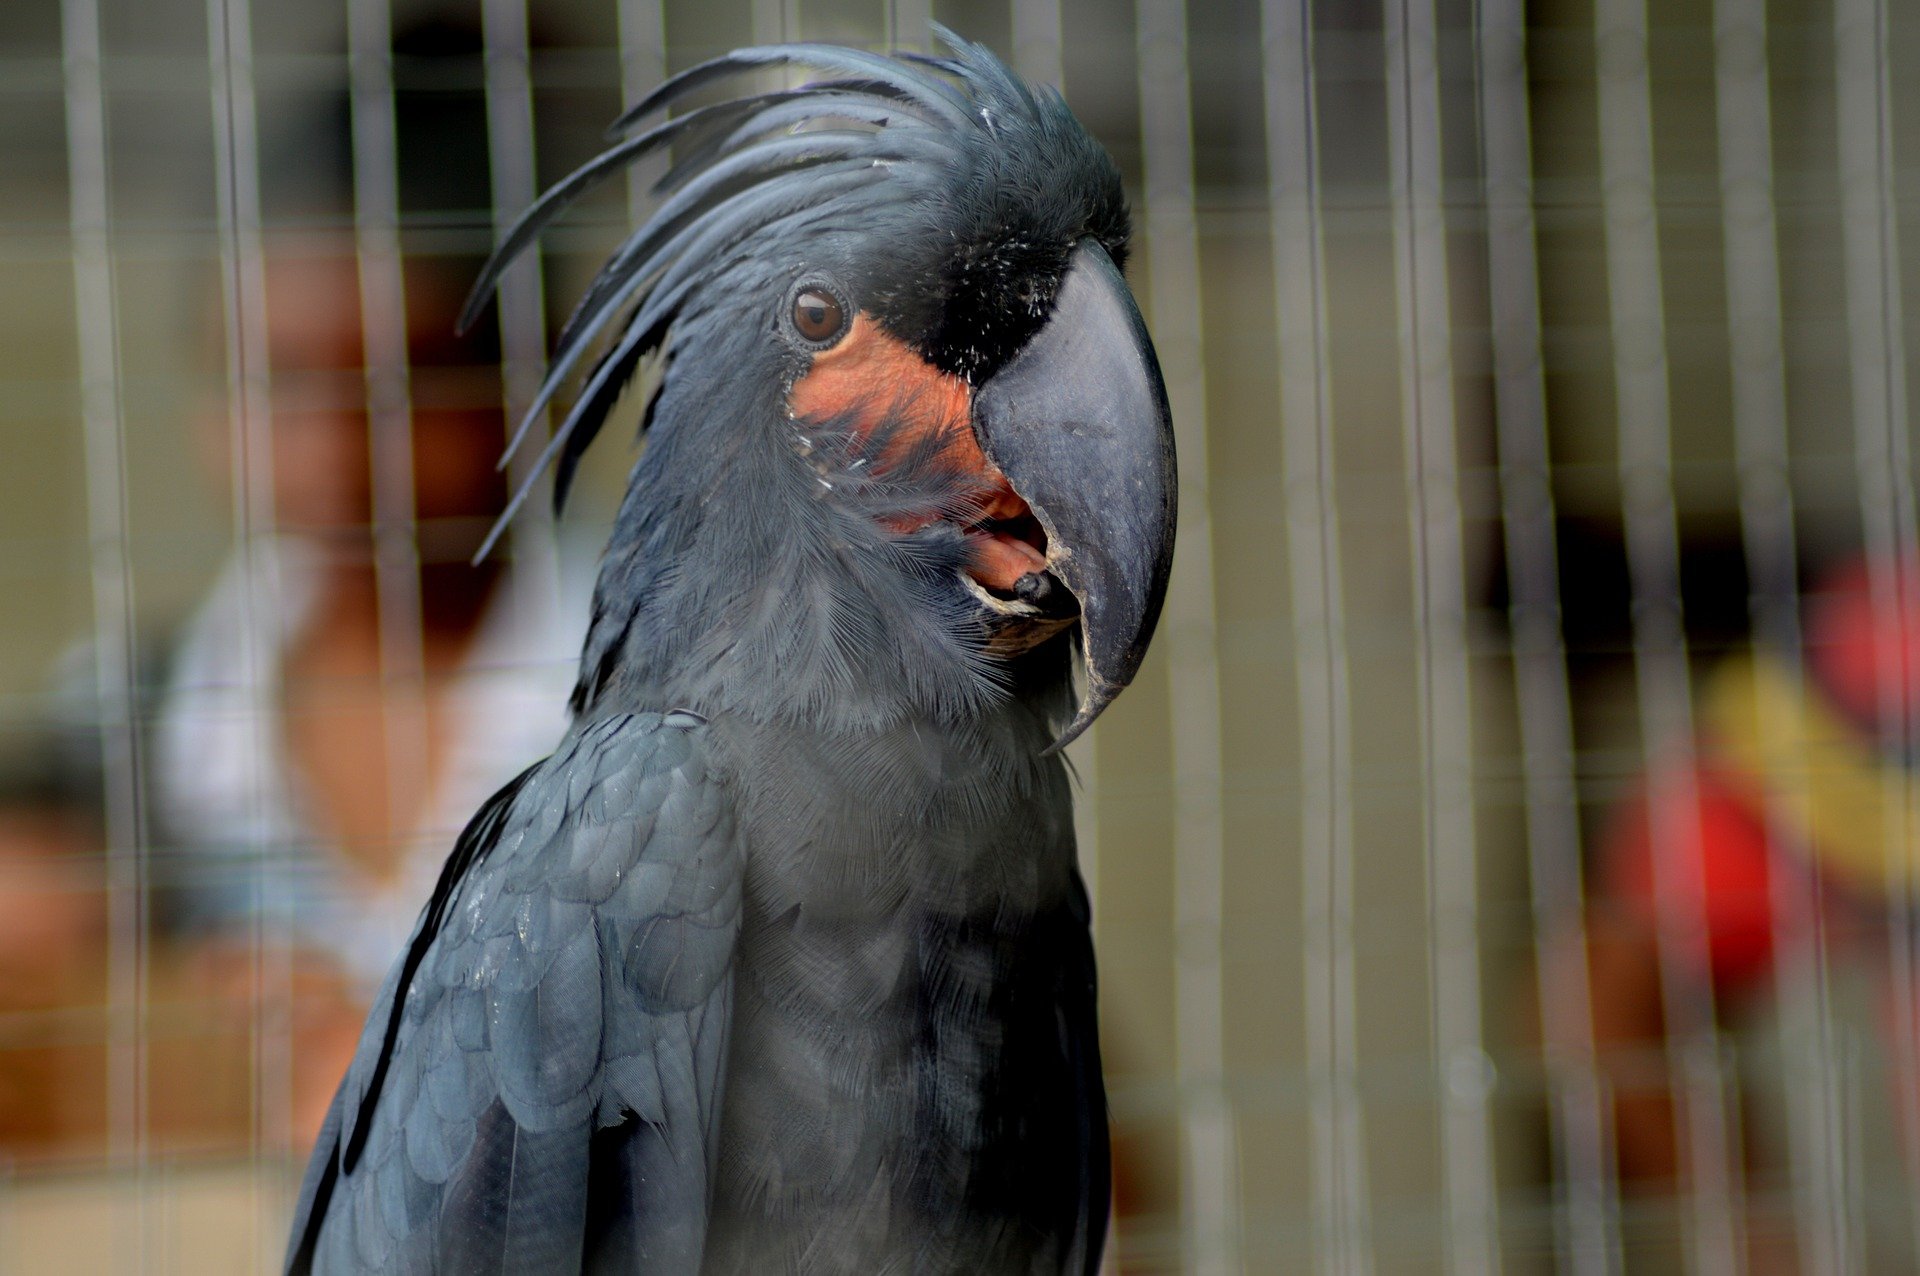 Møt en av de mest eksotiske fugleartene: Dracula-papegøyen